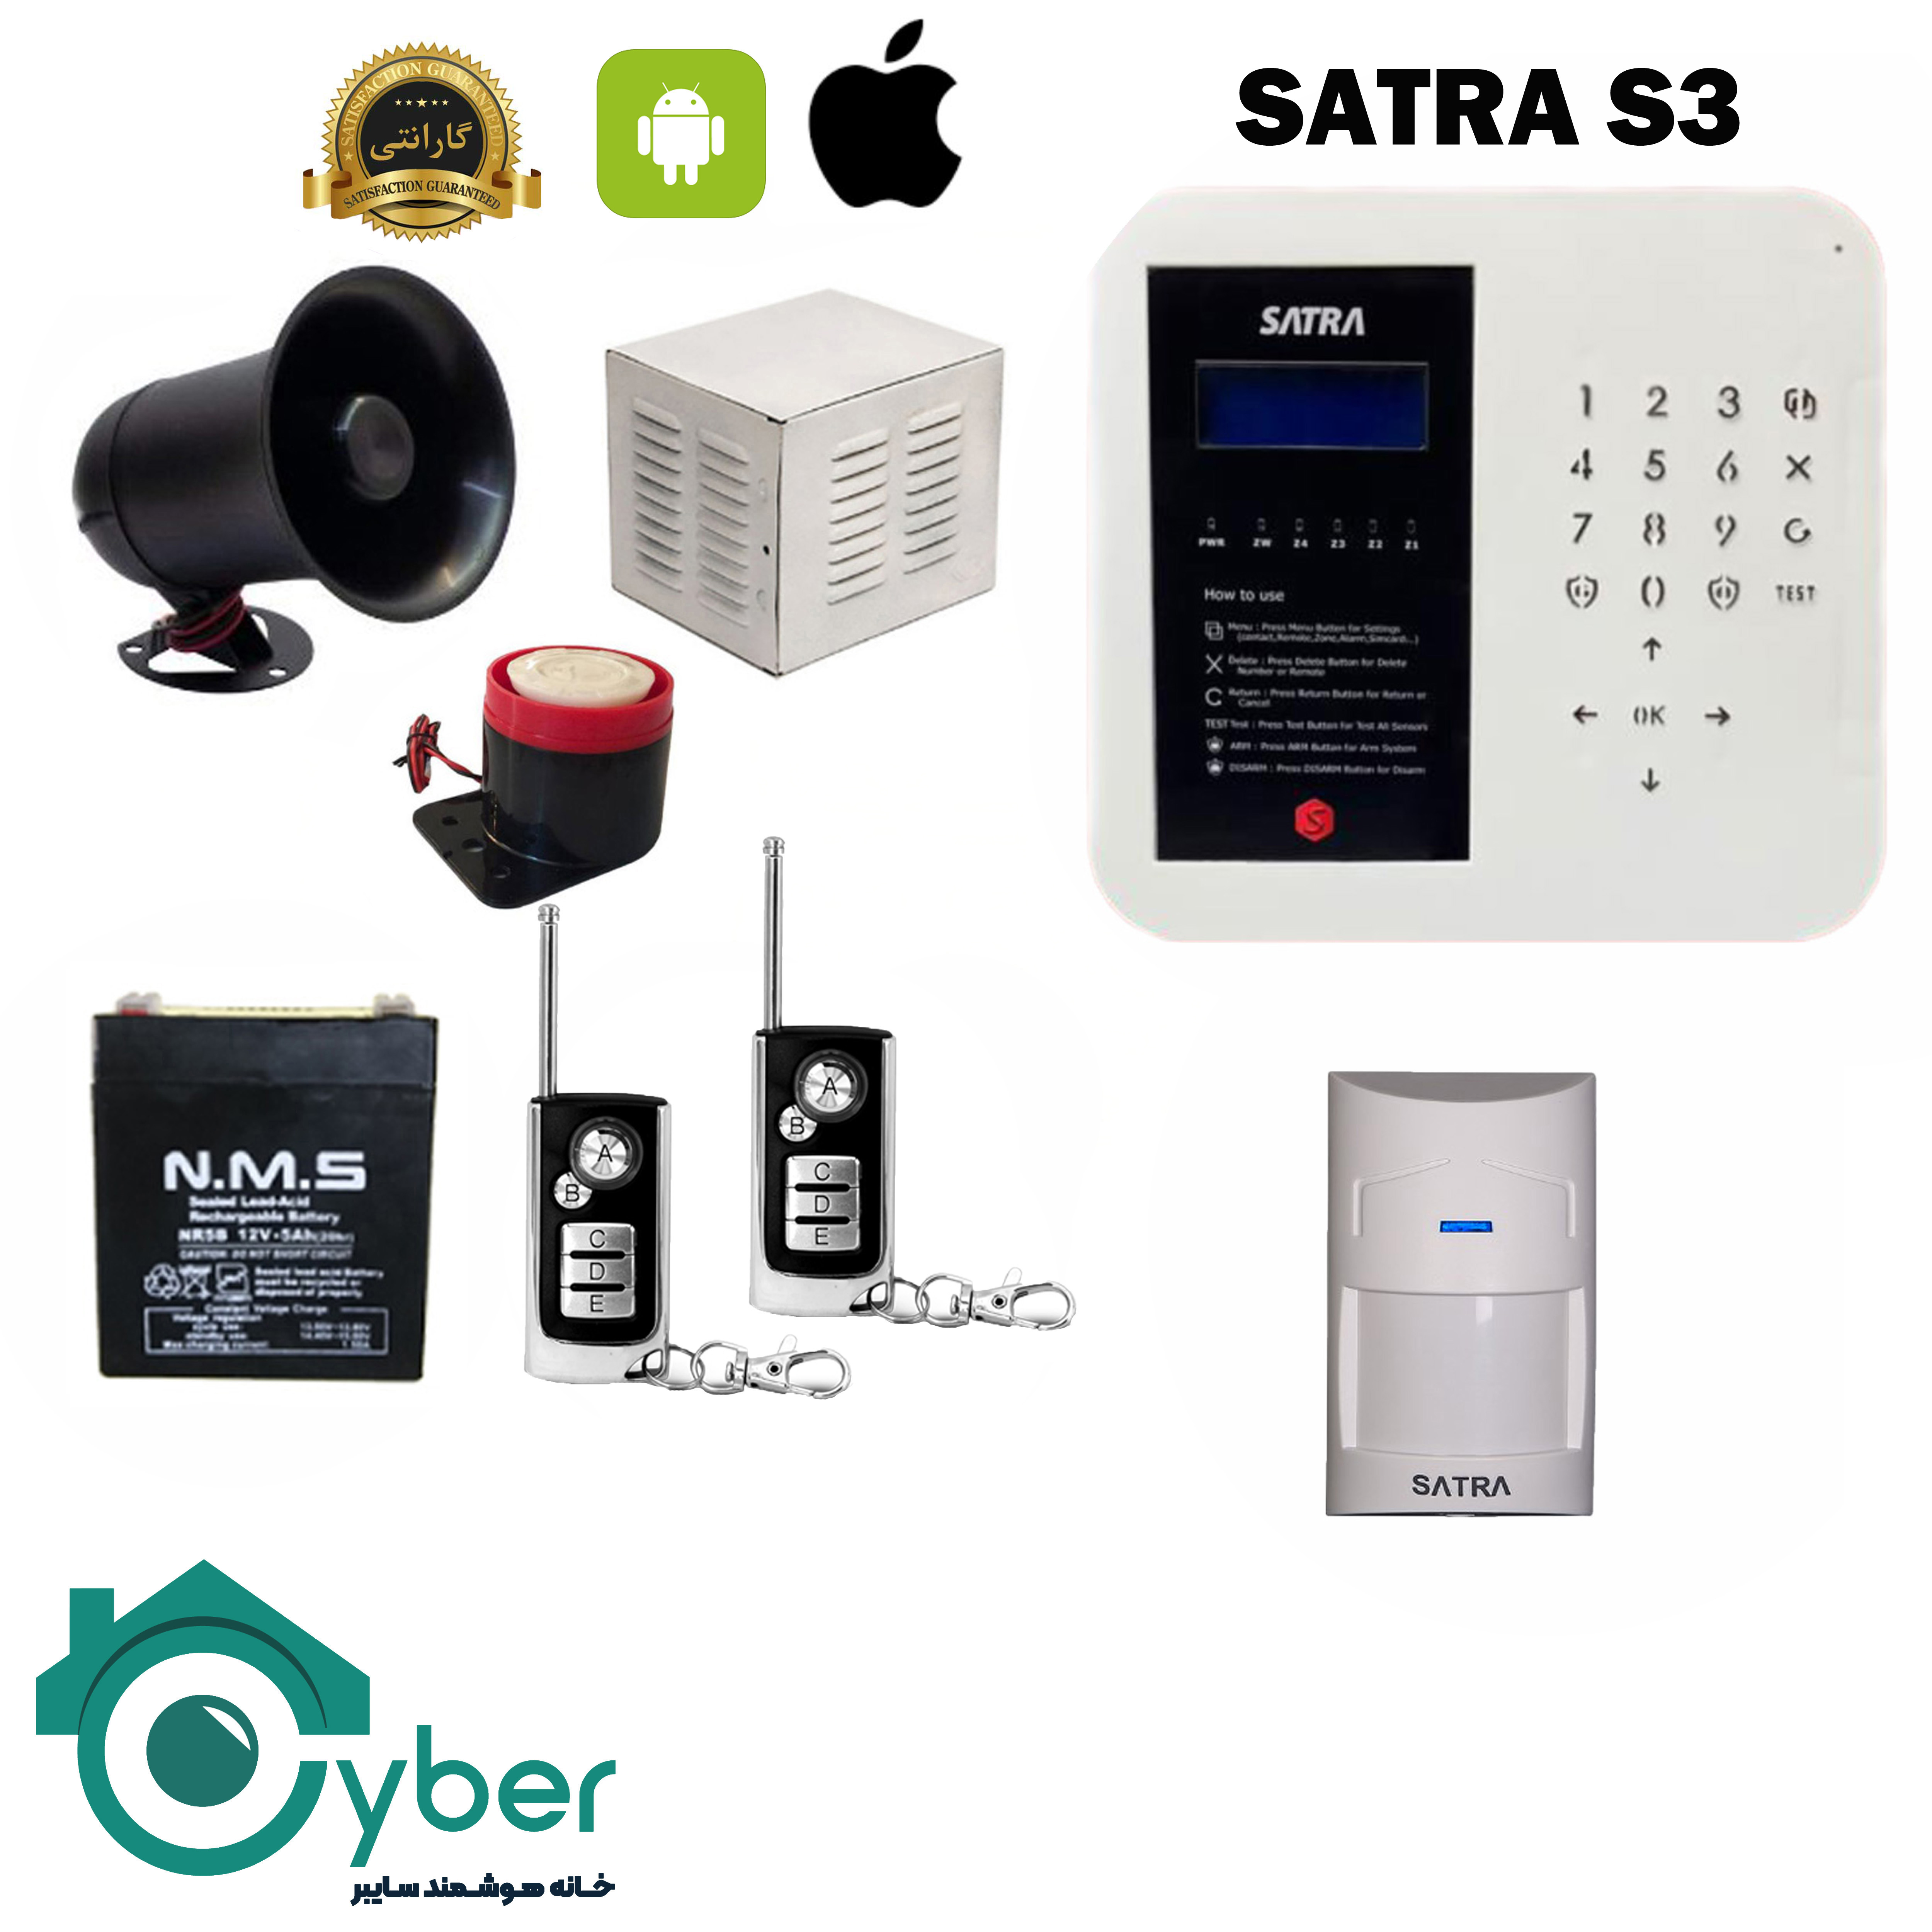 پکیج کامل دزدگیر اماکن SARTA S3 ساترا - 1 عدد سنسور باسیم